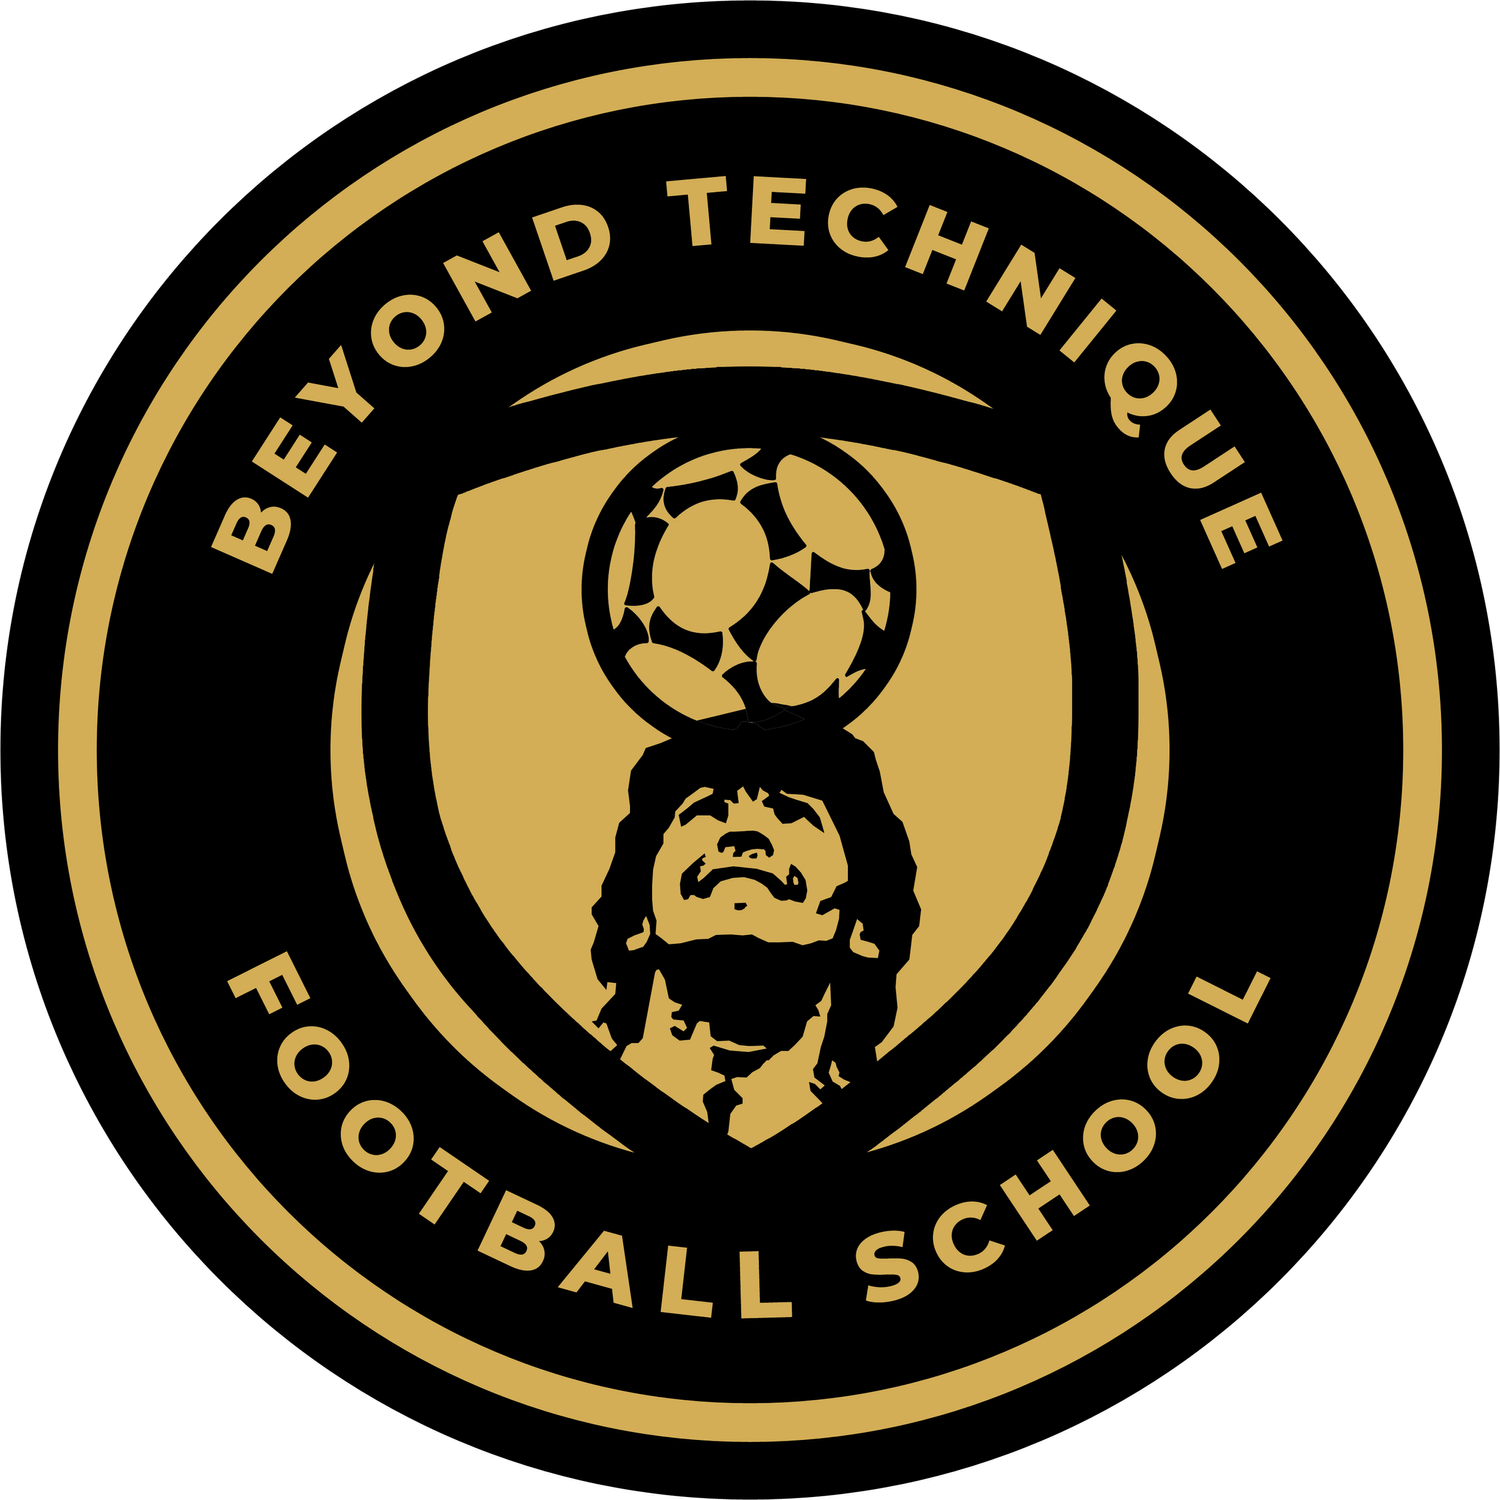 BT Football School